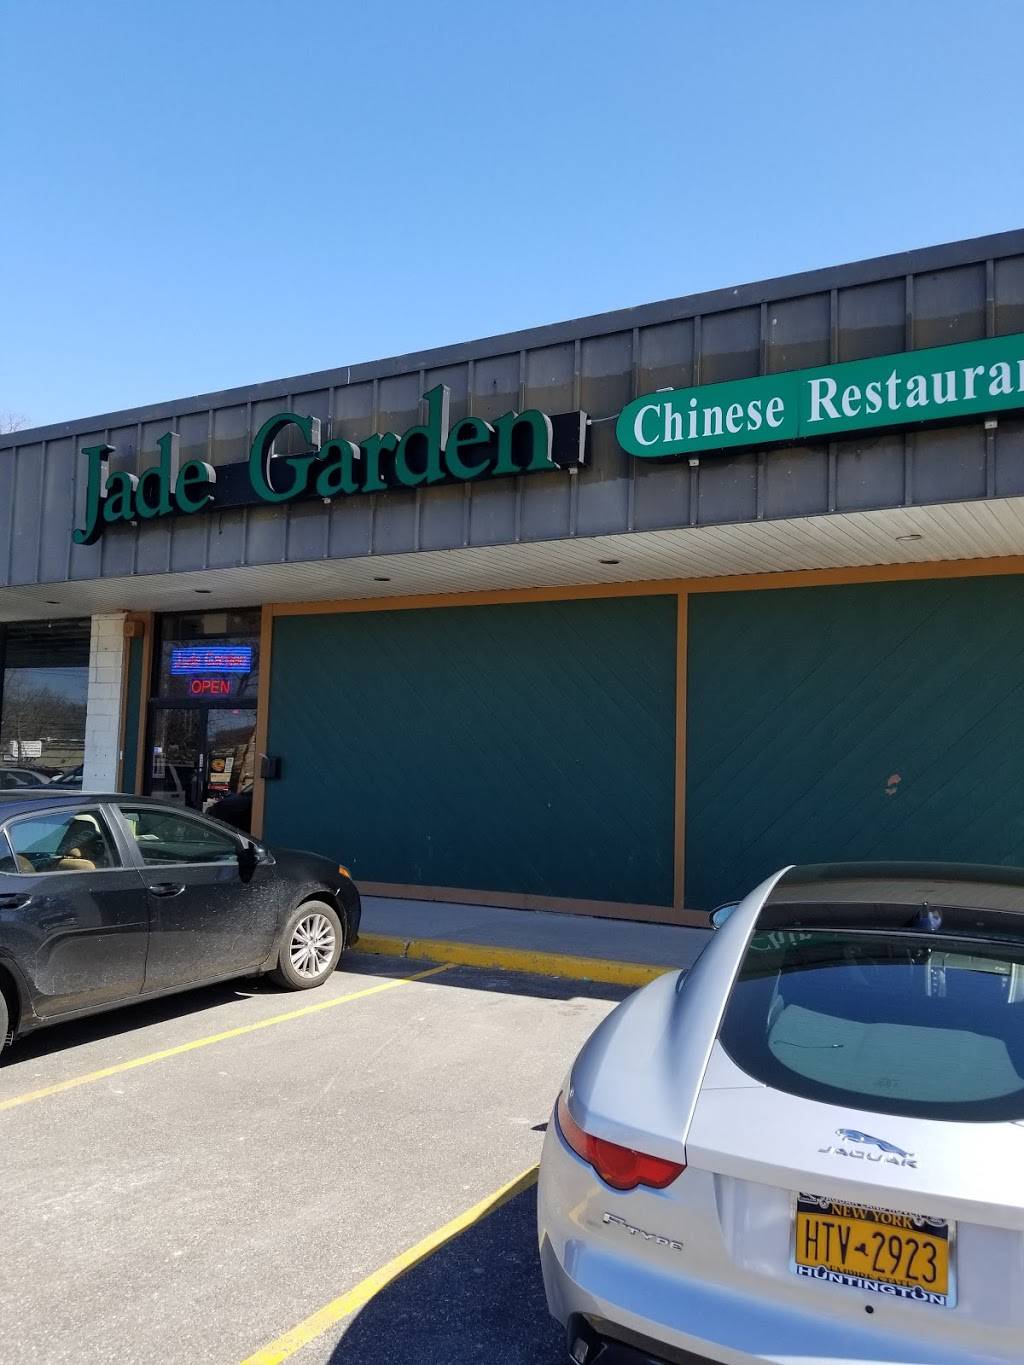 Jade Garden Chinese Restaurant 4359 555 Ny 111 Hauppauge Ny